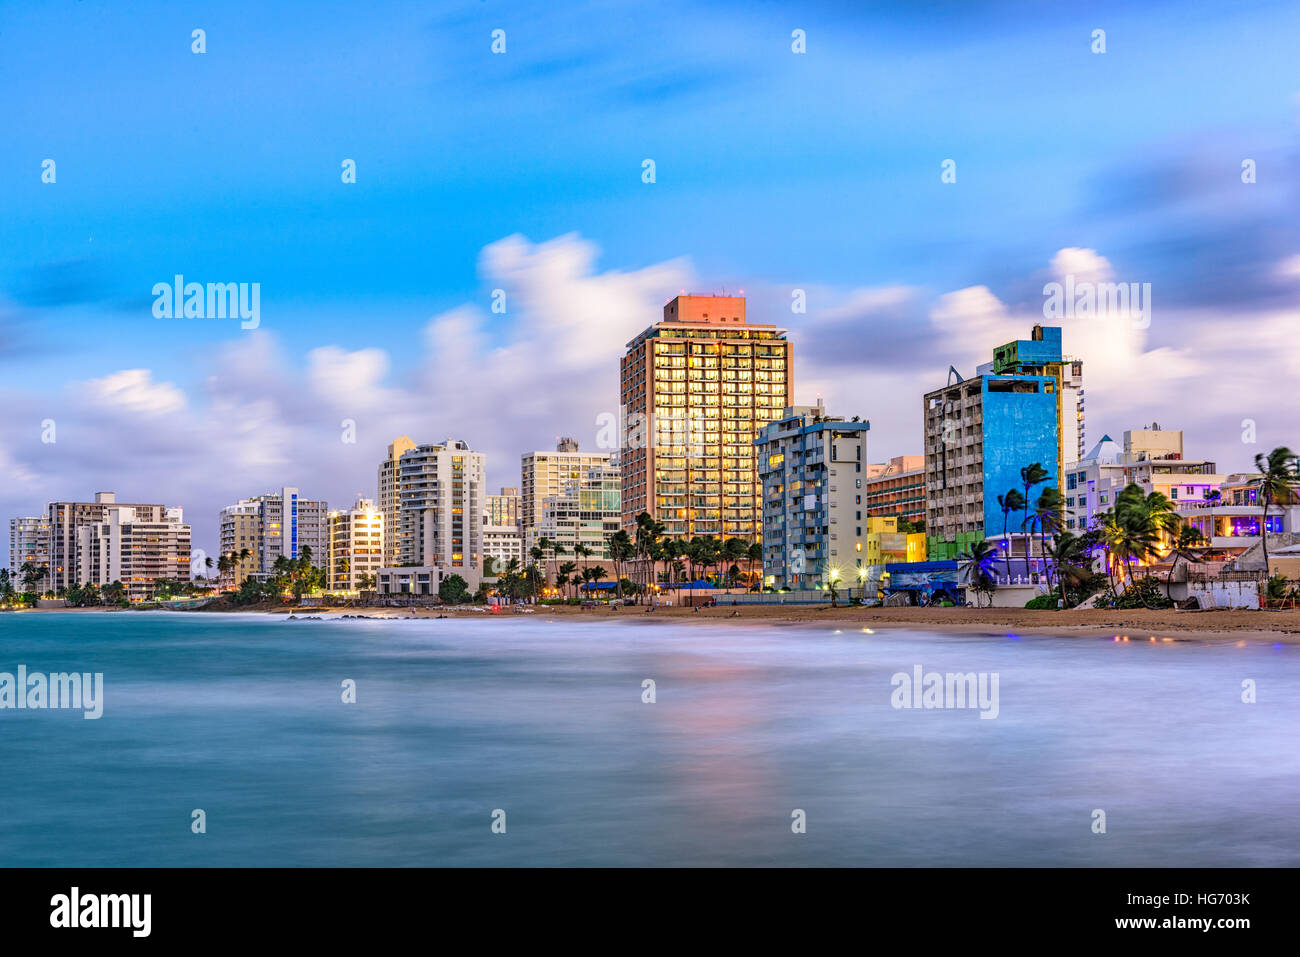 San Juan, Puerto Rico resort skyline on Condado Beach. Stock Photo